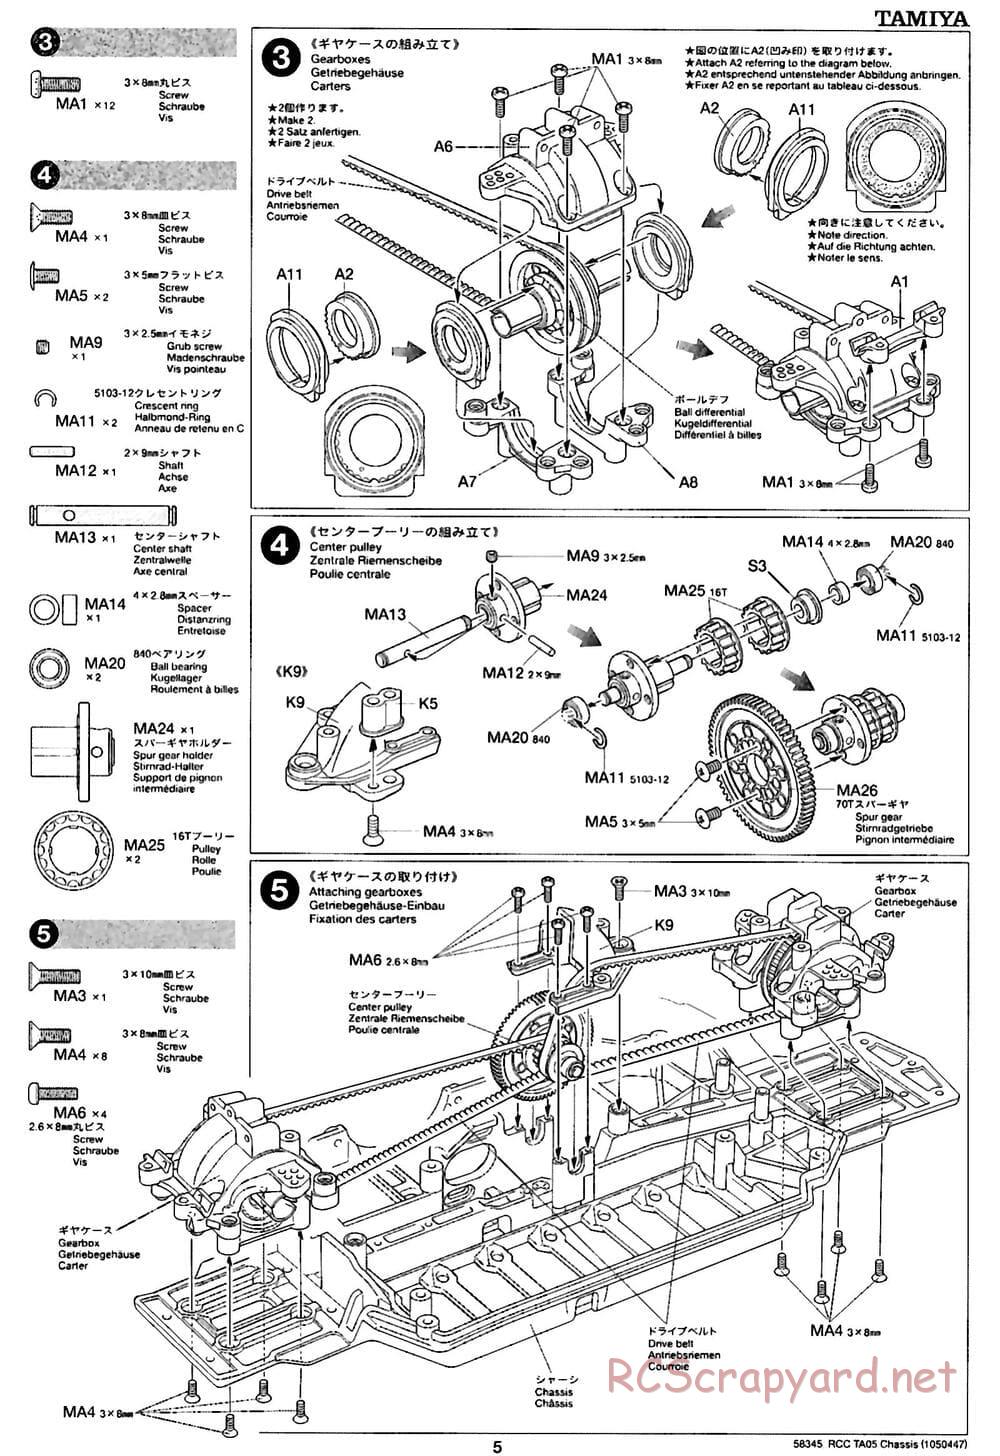 Tamiya - TA05 Chassis - Manual - Page 5